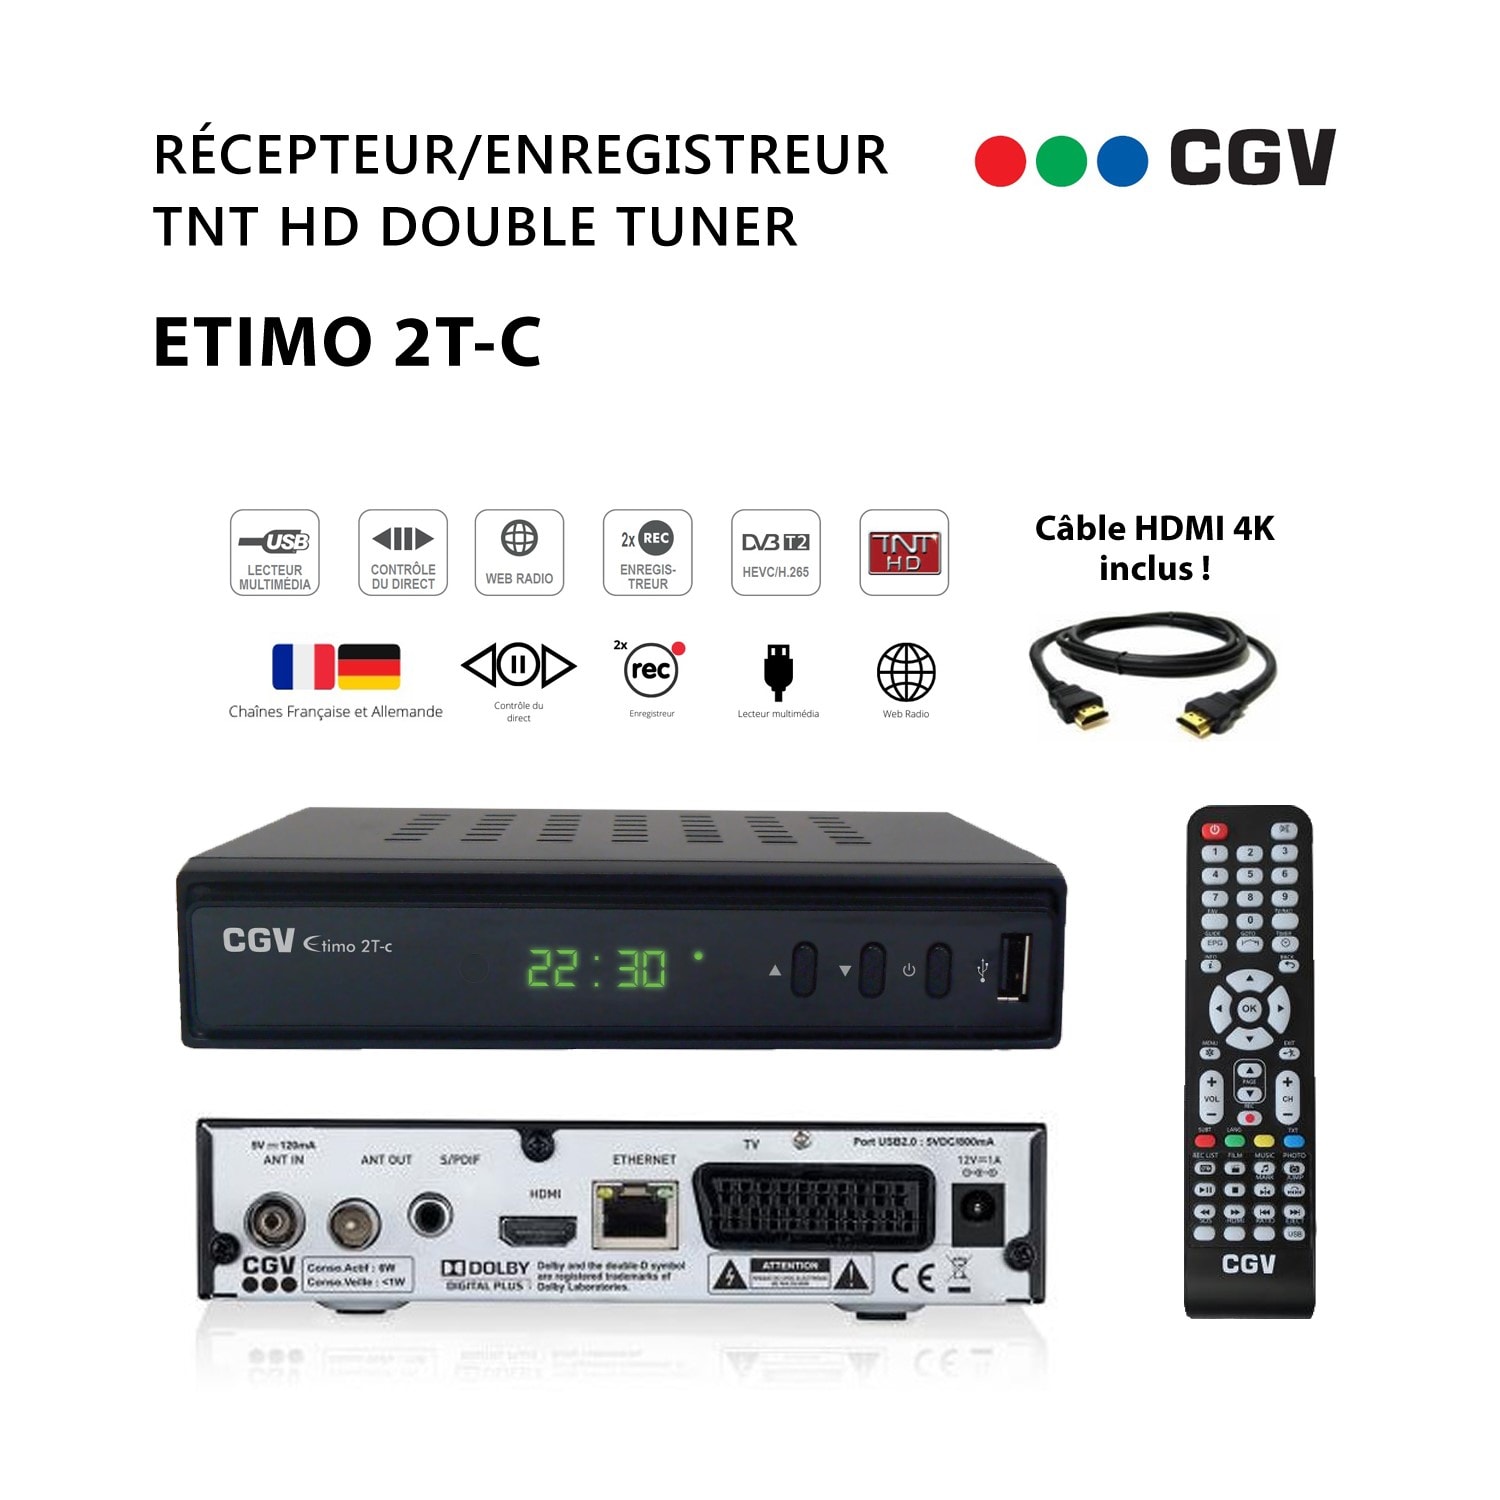 Récepteur-enregistreur TNT UHD 4K ETIMO UHD1